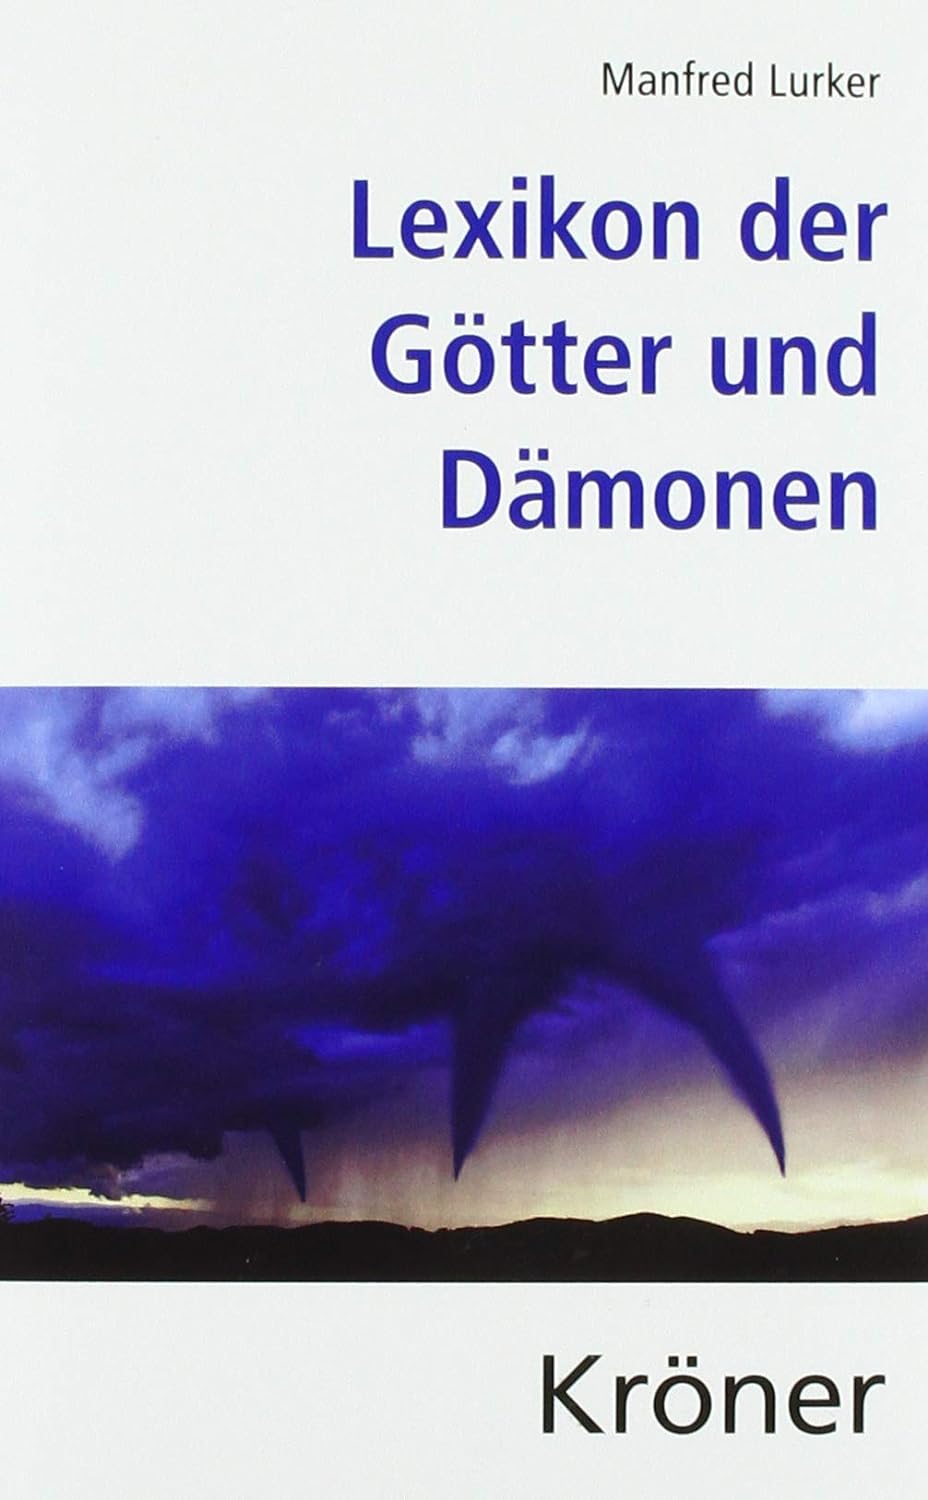 Manfred Lurker: Lexikon der Götter und Dämonen (German language, 1989, A. Kröner)